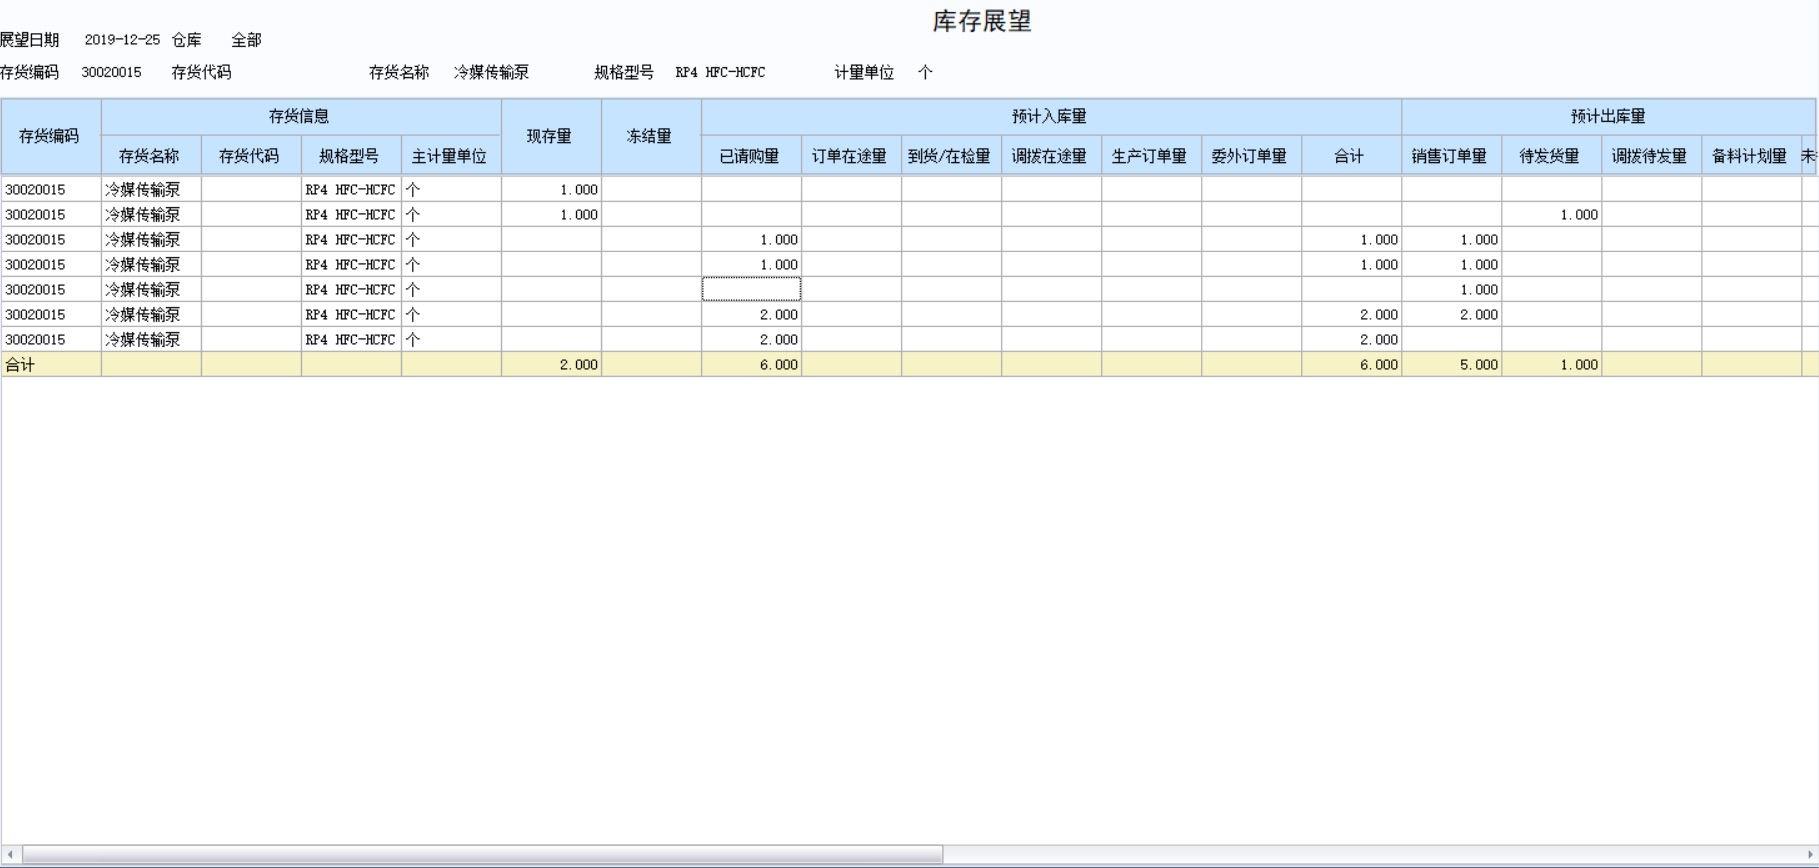 民办非企业学校财务软件
:鹤壁公司财务软件教程